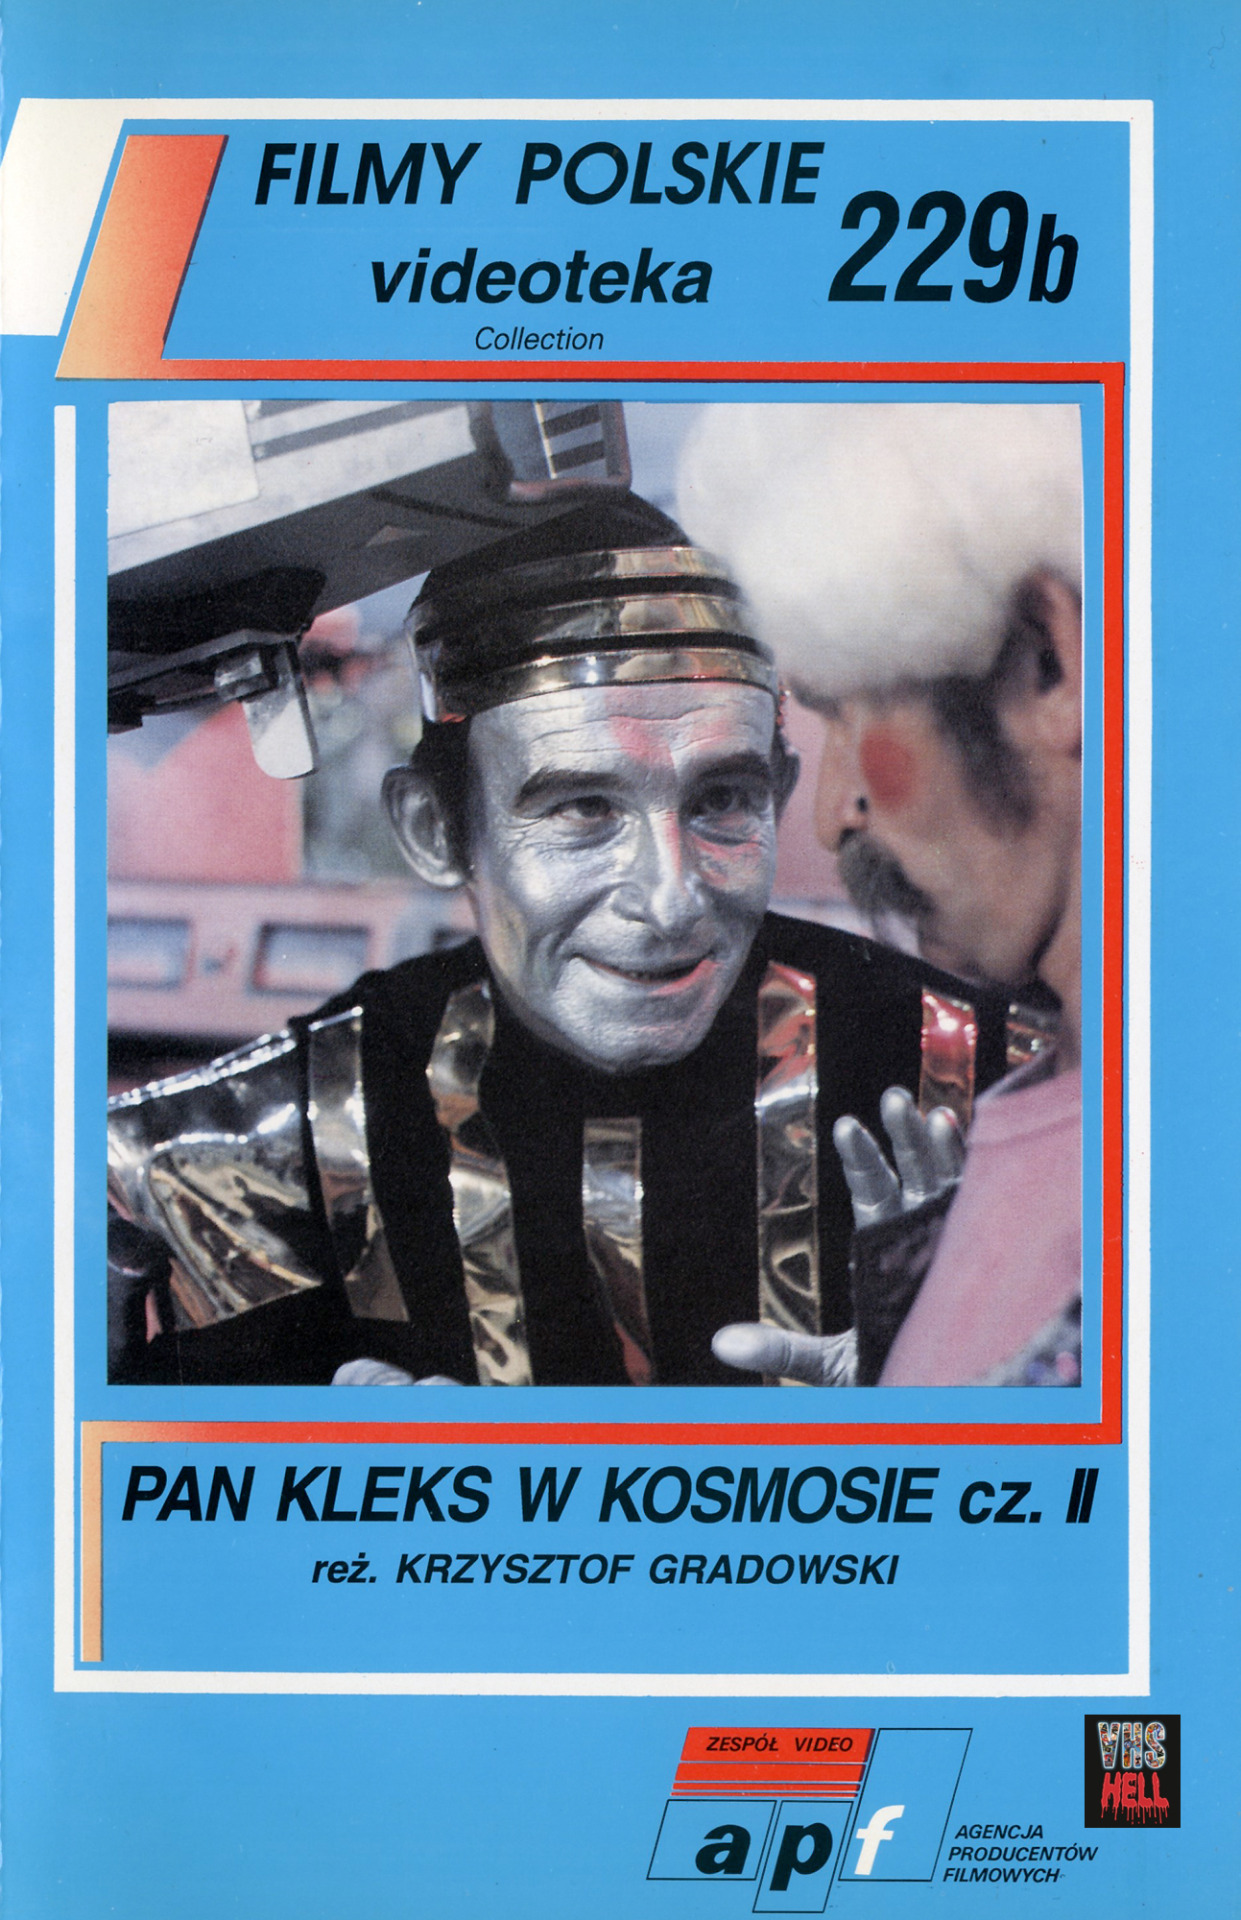 Pan Kleks w kosmosie (1988) Screenshot 3 